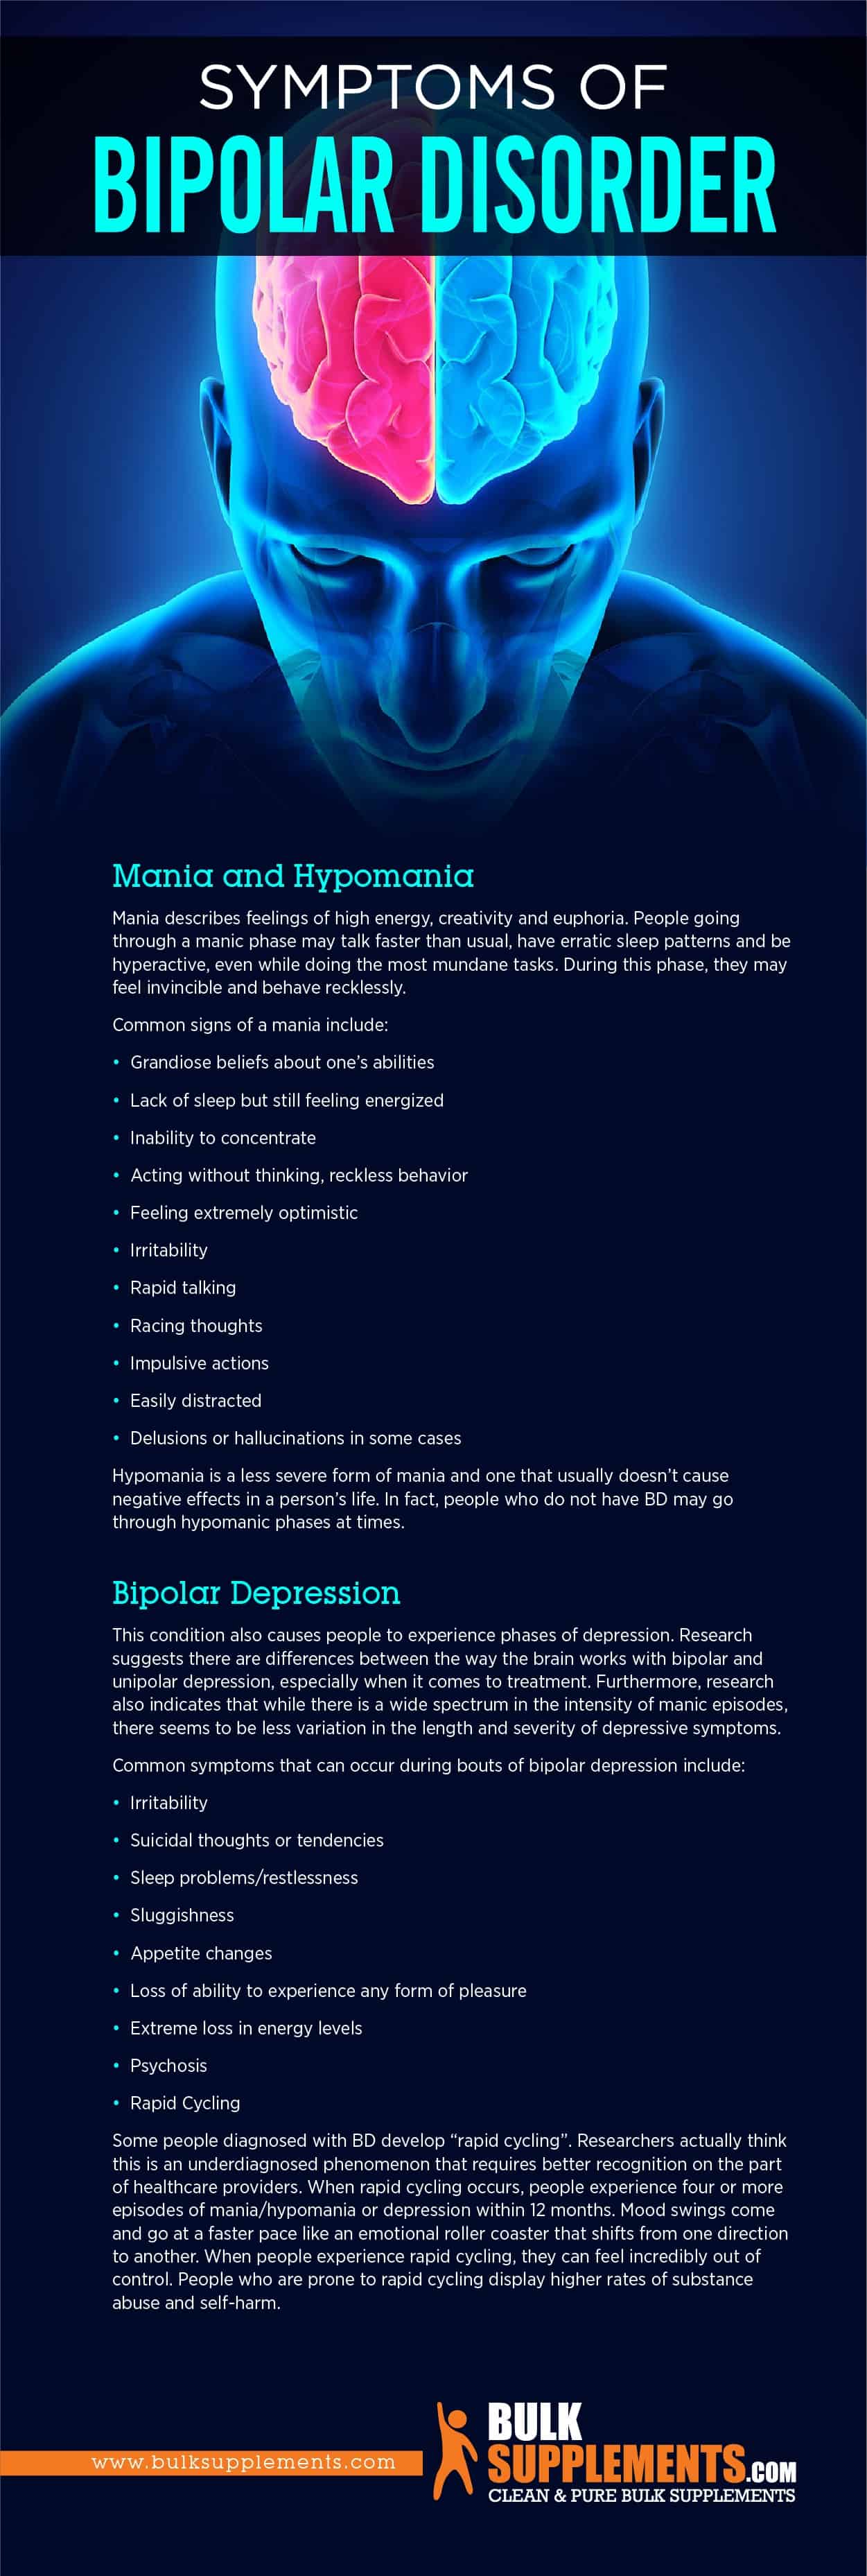 Symptoms of Bipolar Disorder